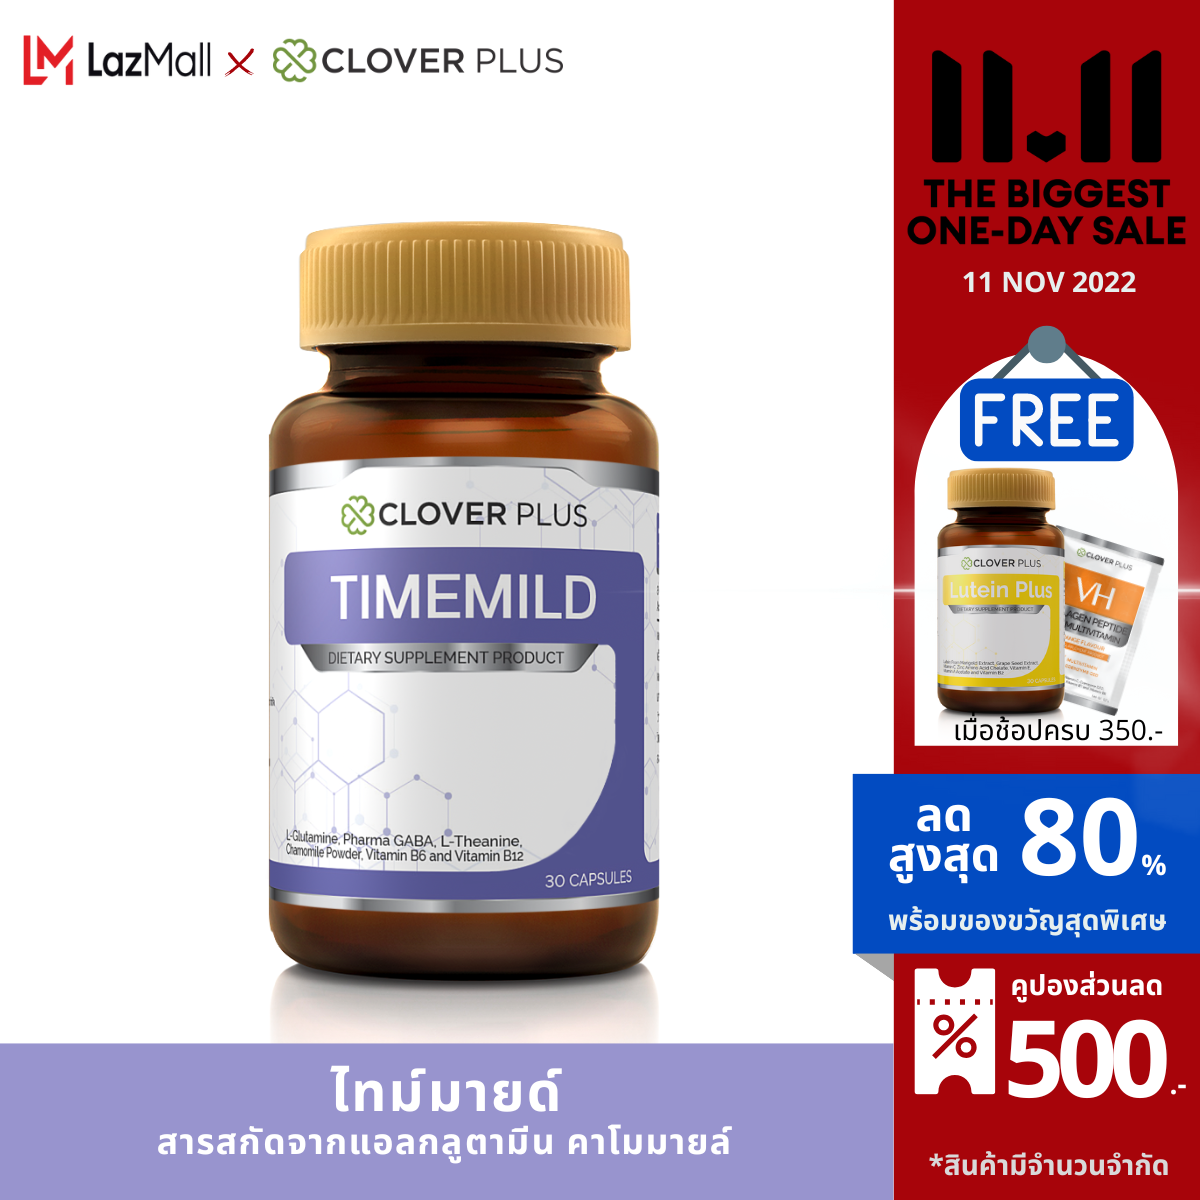 Clover Plus Timemild ไทม์มายด์ อาหารเสริมเพื่อการนอนหลับ แอล-กลูตามีน มีส่วนผสมของดอก คาโมมายล์ (30แคปซูล) (อาหารเสริม)